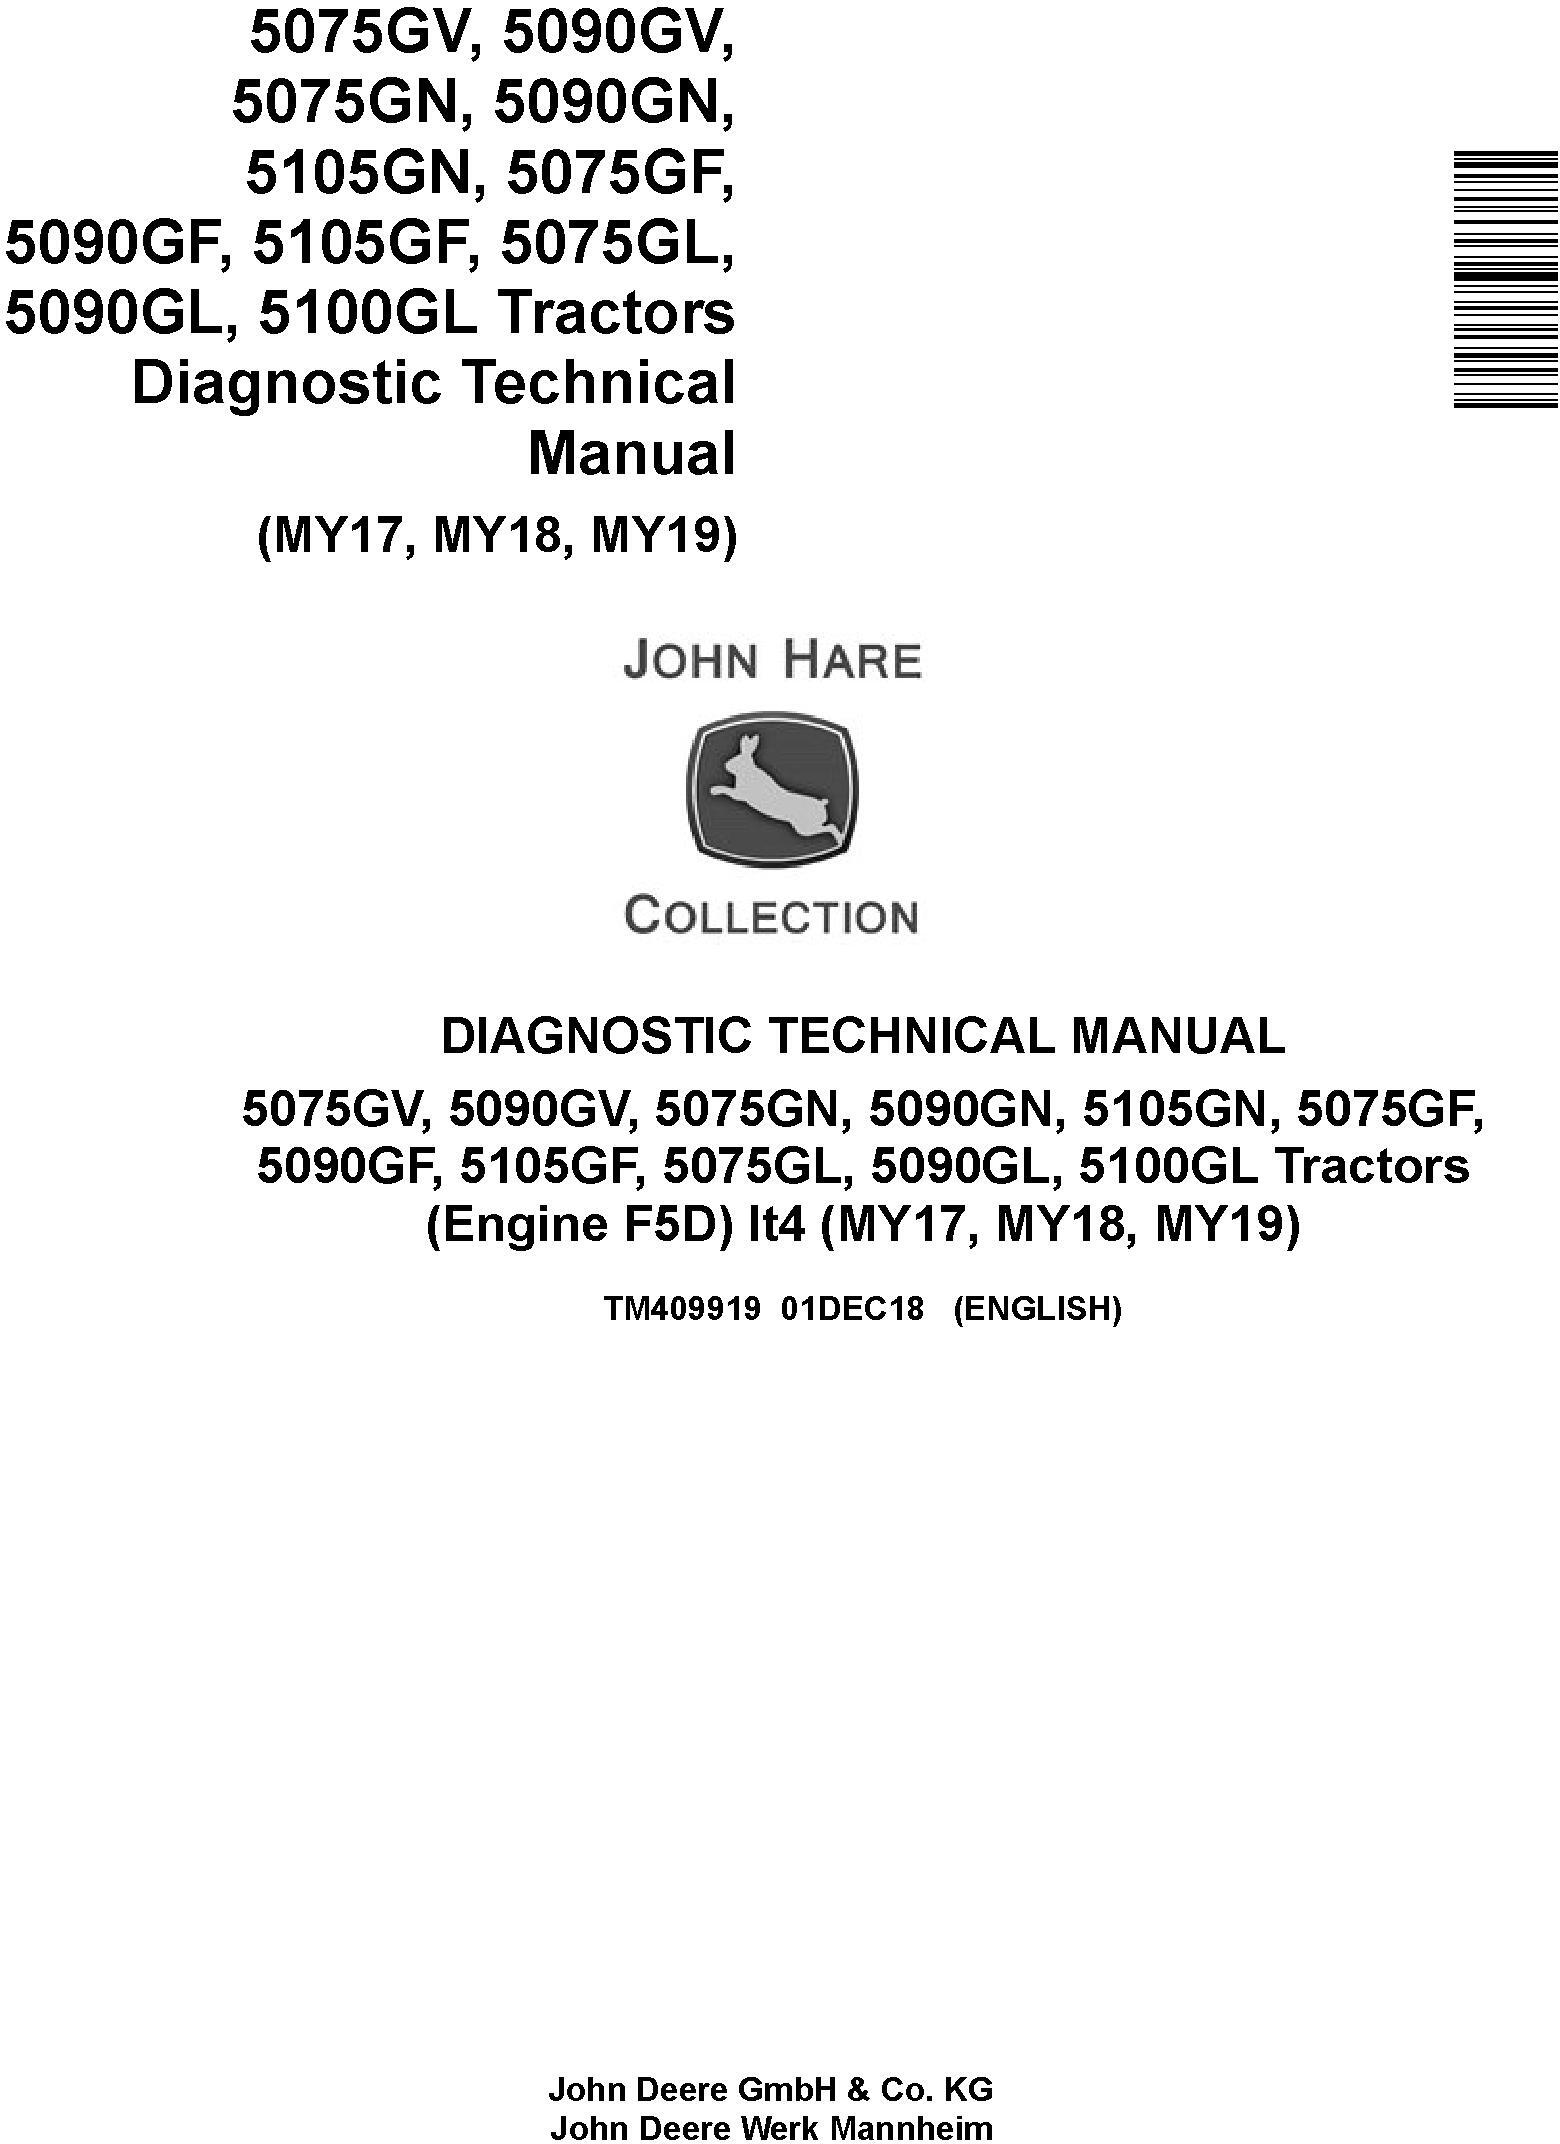 John Deere 5075GV/GN/GF/GL, 5090GV/GN/GF/GL, 5100GL, 5105GN/GF Tractors Diagnostic Manual (TM409919) - 19115